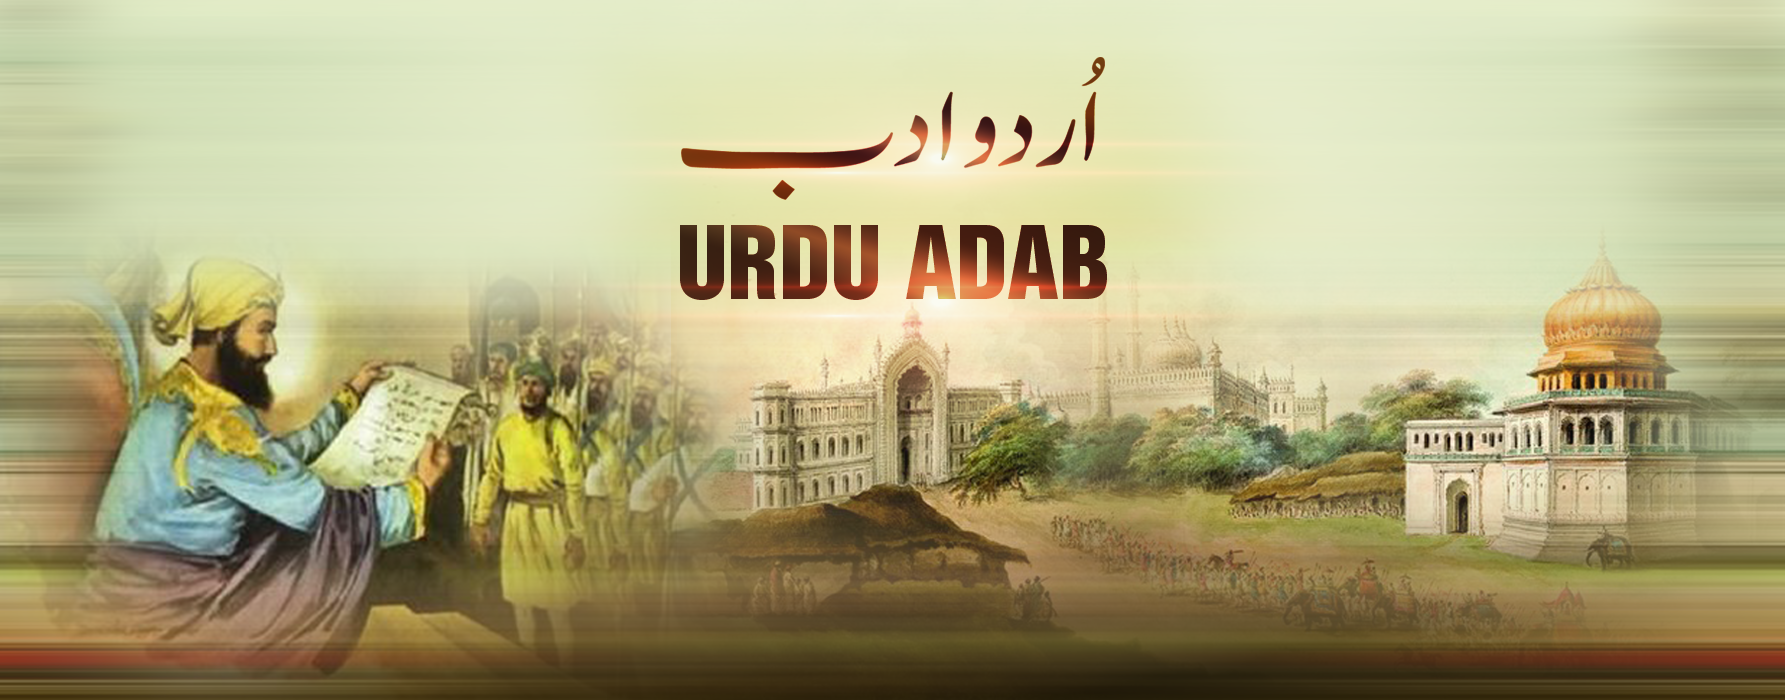 # 27 Dhund aur aiena  دھند اور آئینہ | Urdu Adab